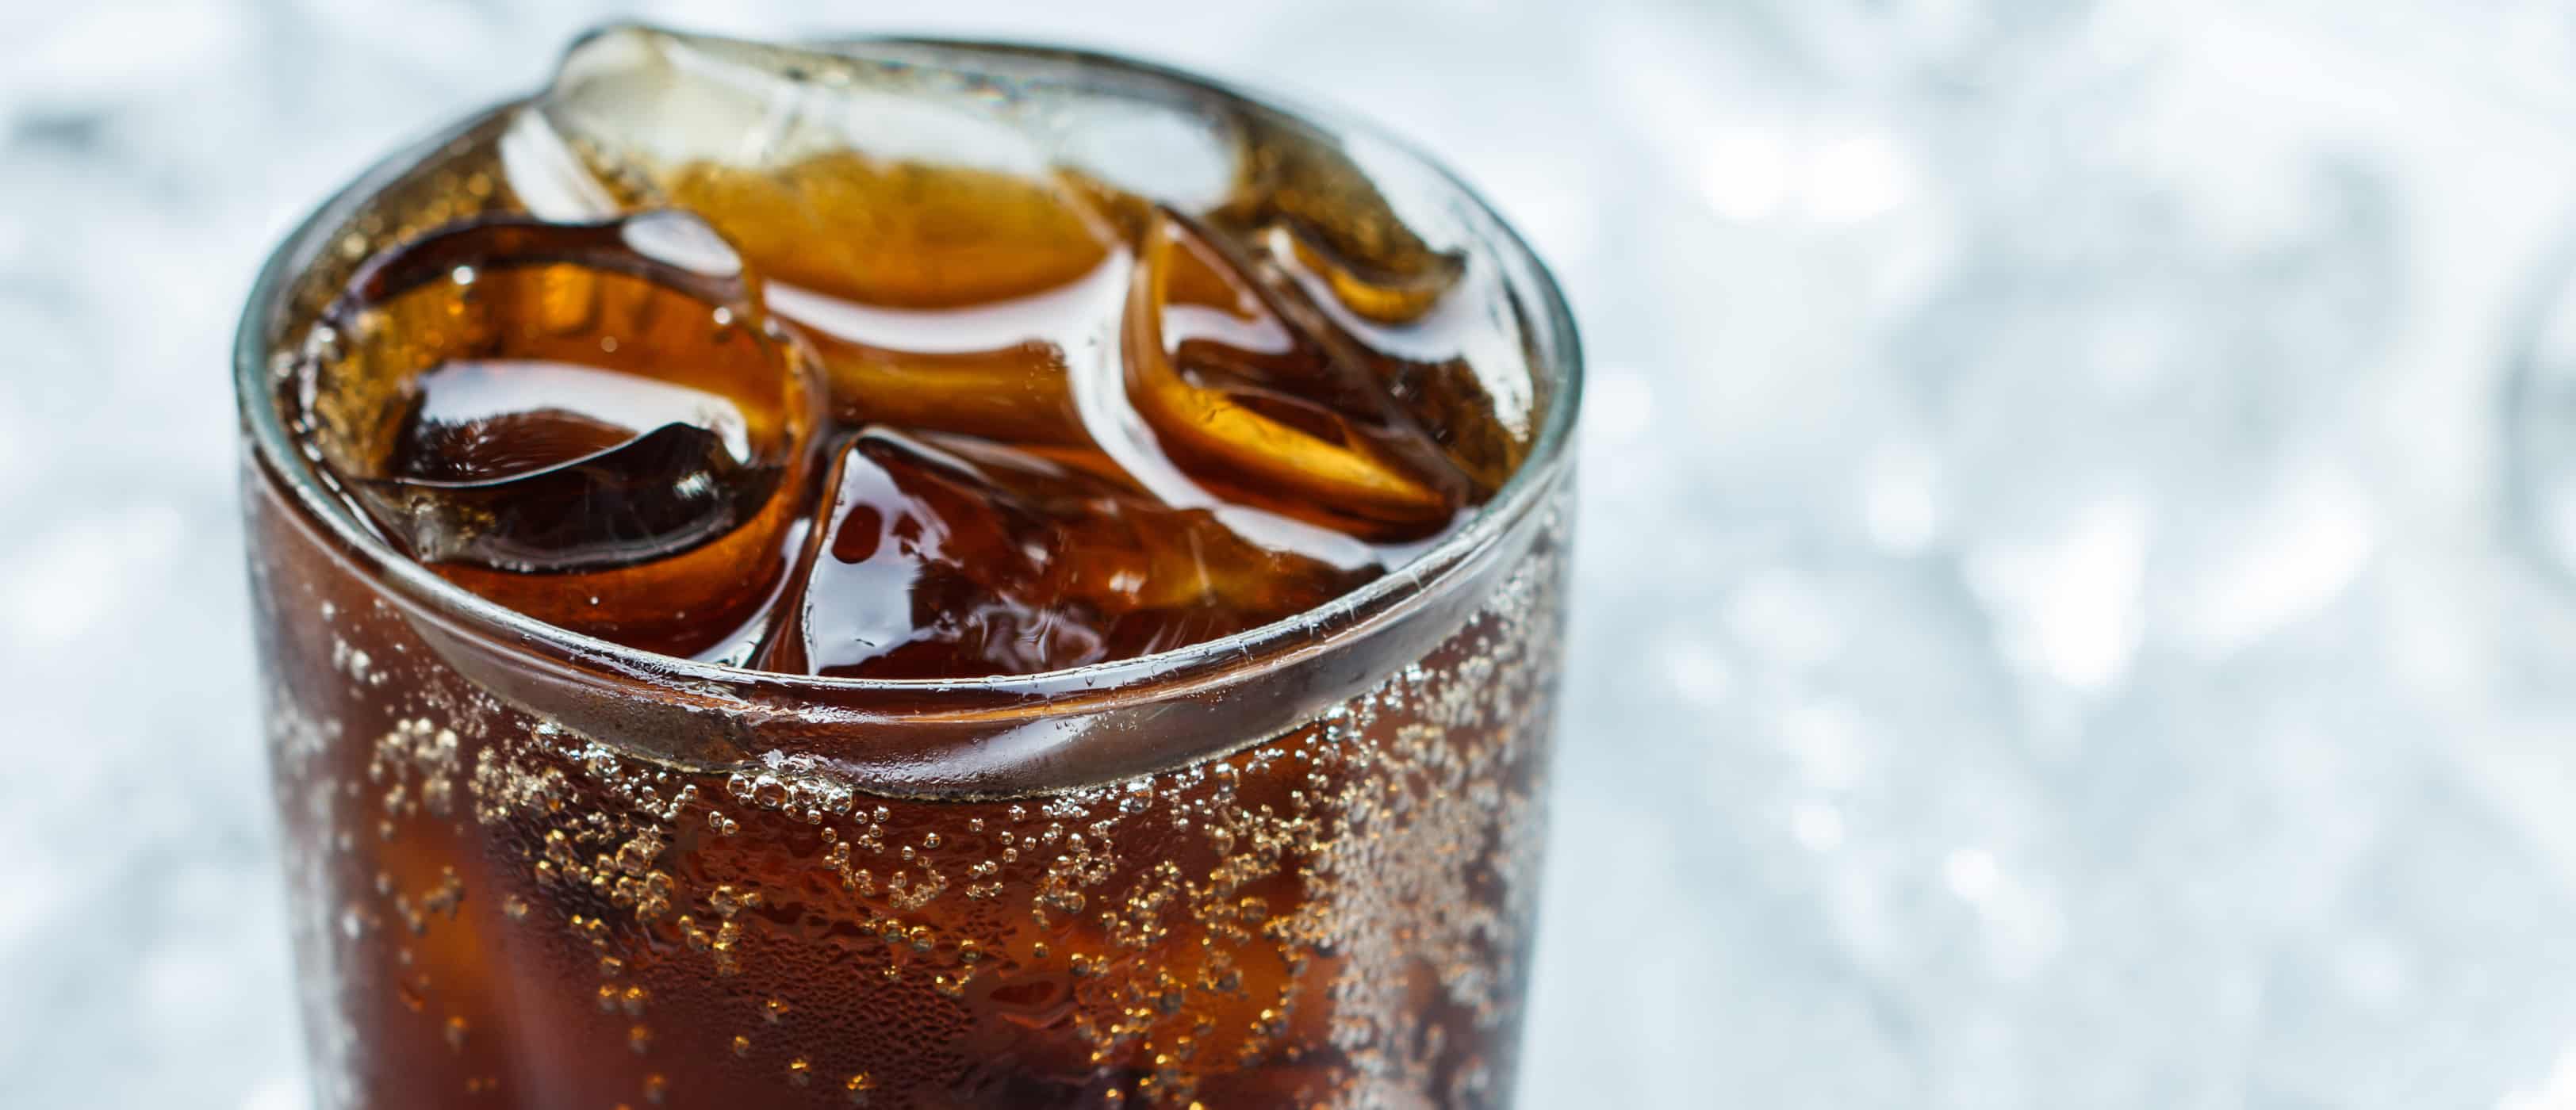 mýtus o nebezpečí umělého sladidla aspartamu